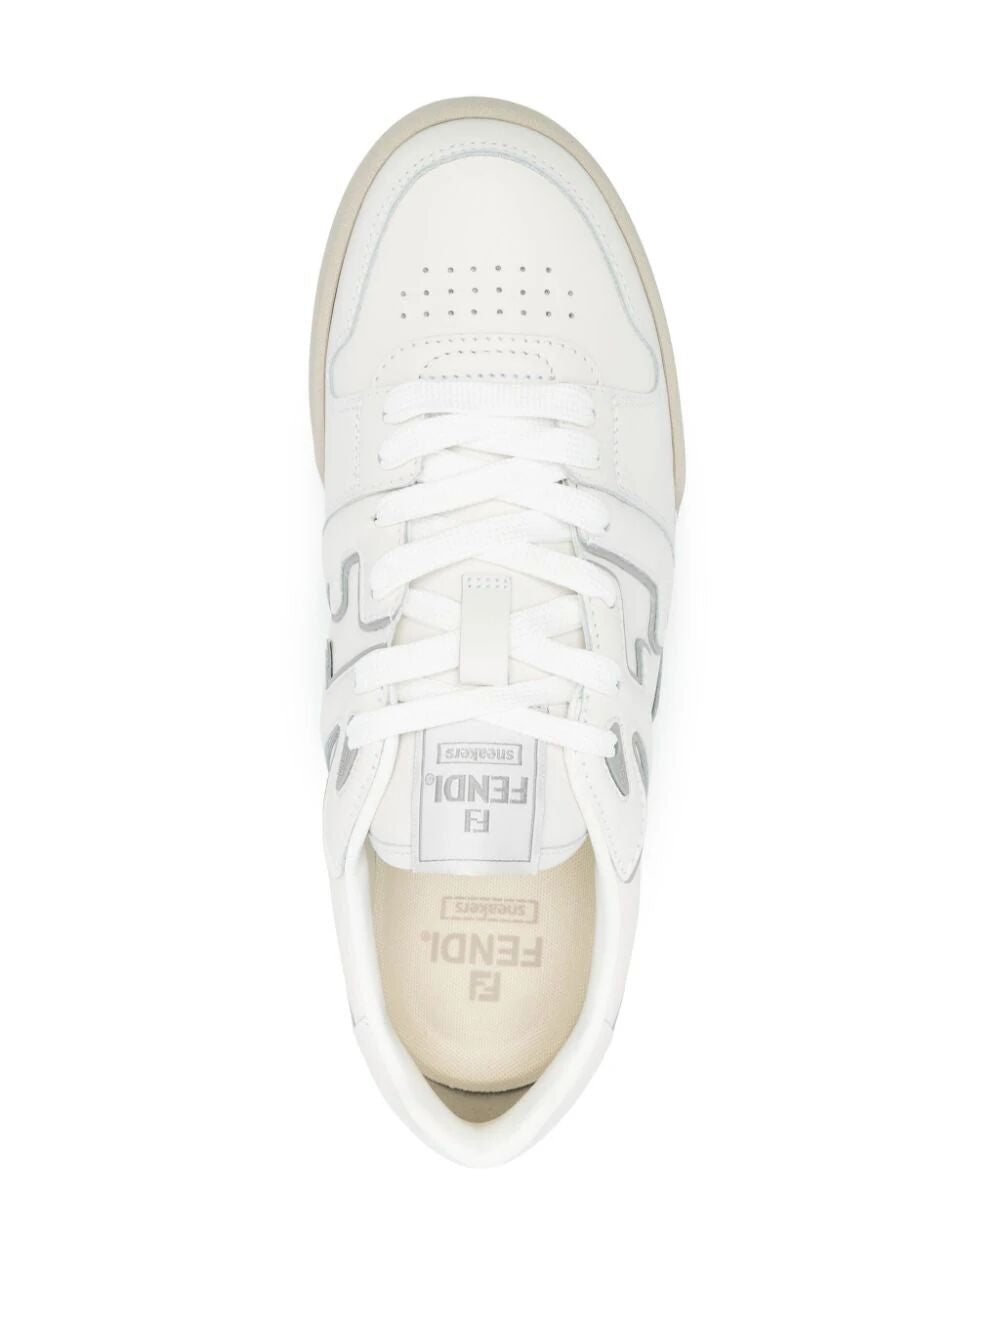 Giày Sneaker Da trắng với Chèn xám và Logo FF cho Nam